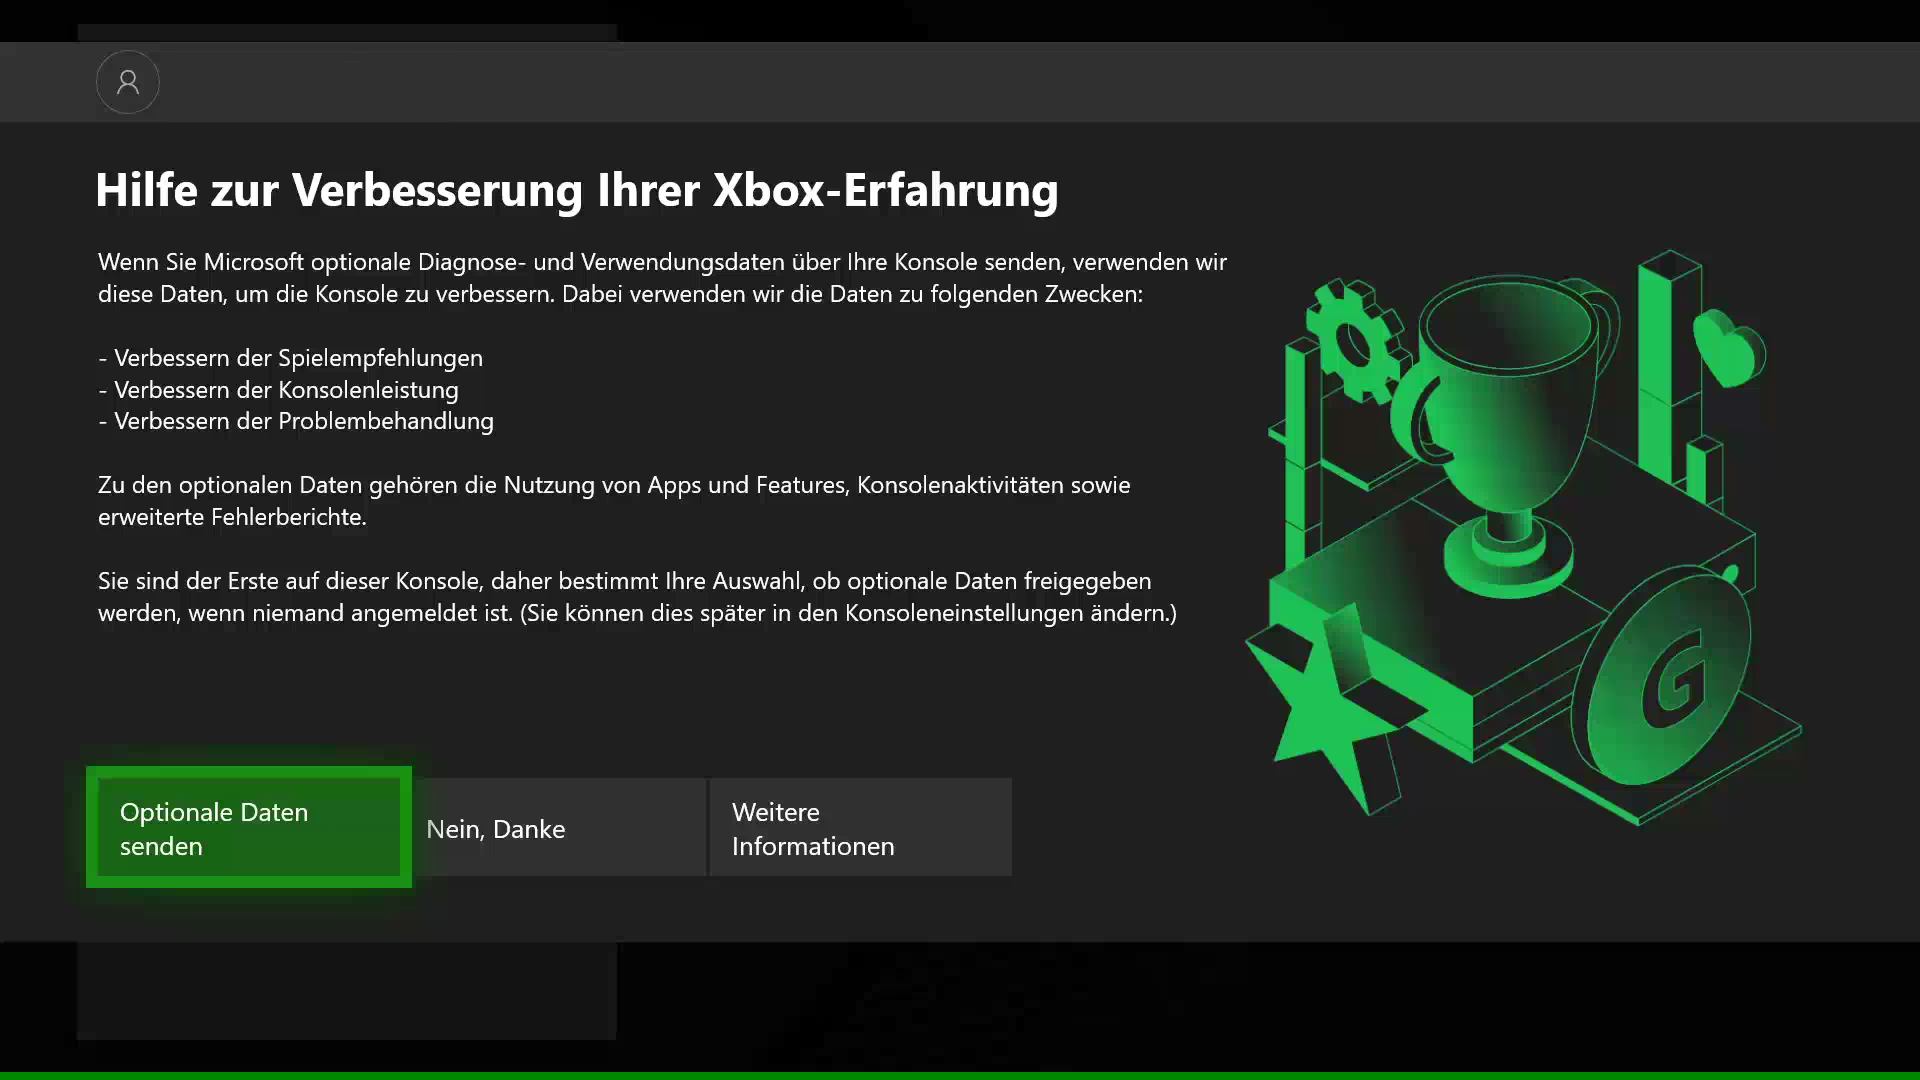 Xbox One-Update im August: Erhalte mehr Transparenz und Kontrolle über die Nutzung Deiner Daten